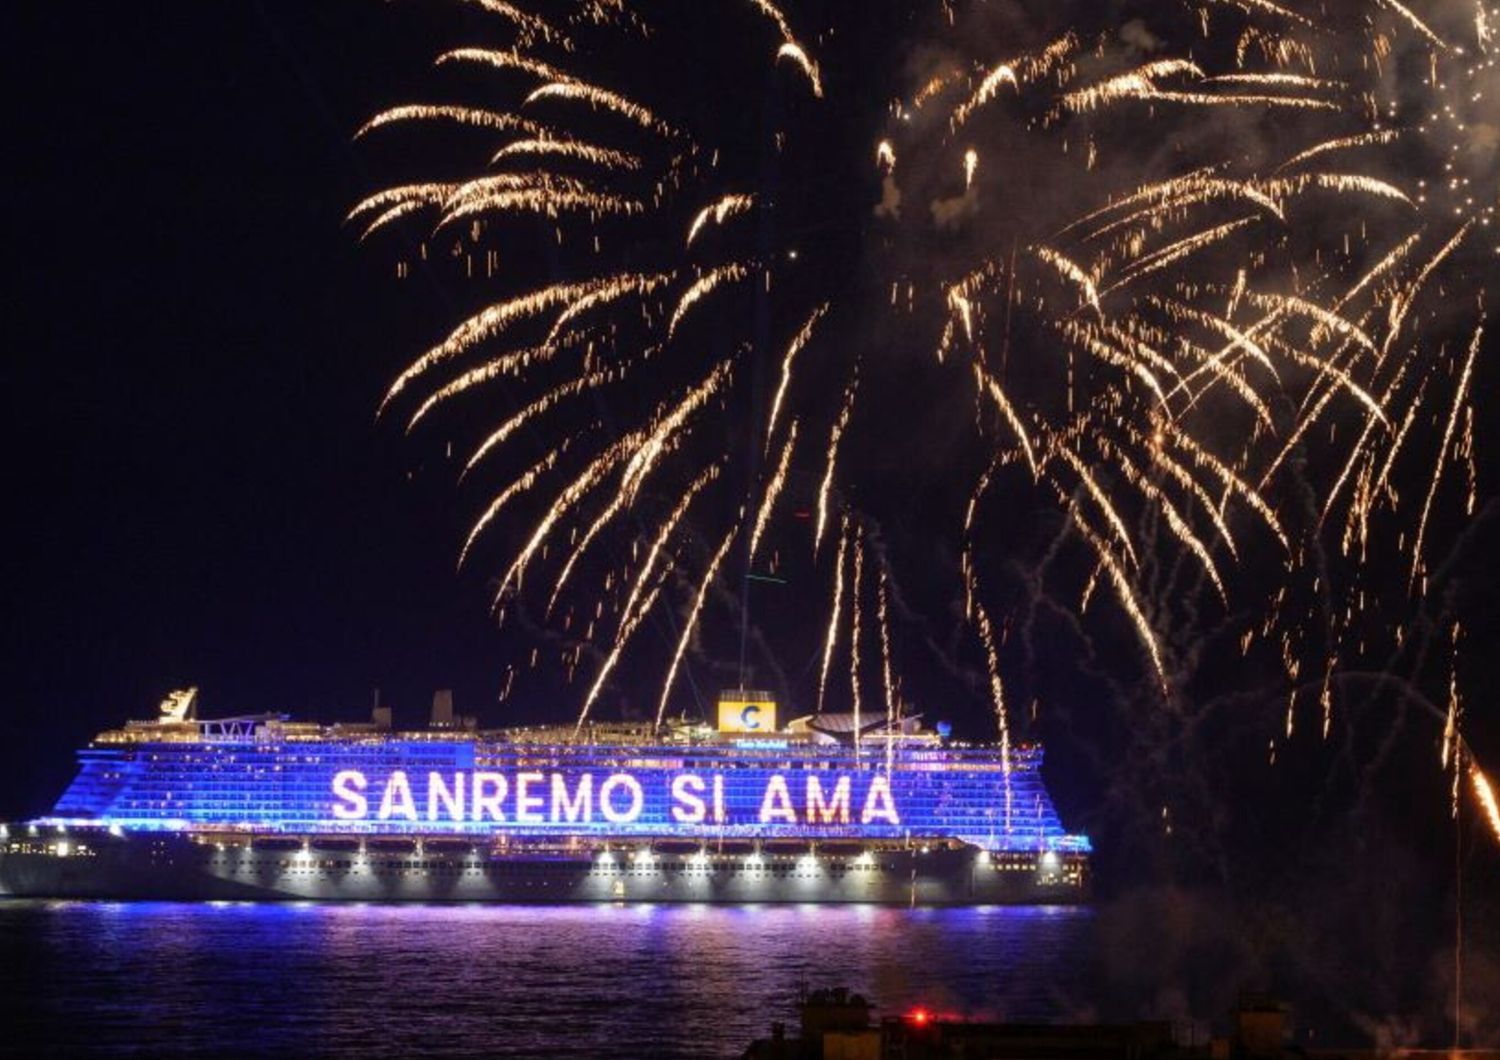 La nave Costa Smeralda, ormeggiata di fronte a Sanremo